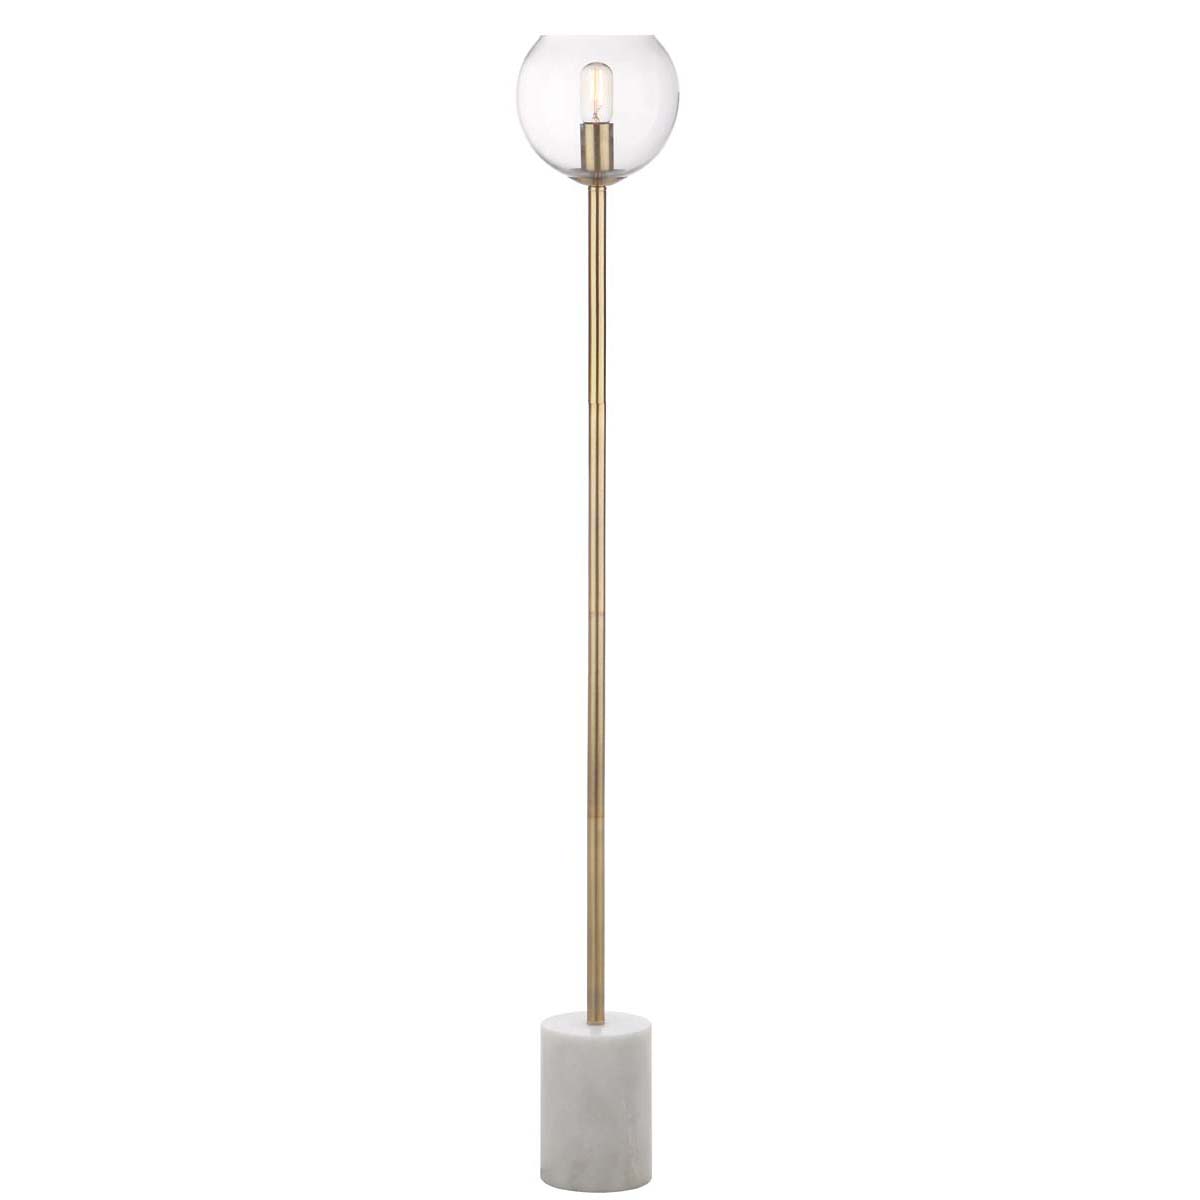 Safavieh Bradley Floor Lamp, FLL4002 - White/Brass Gold